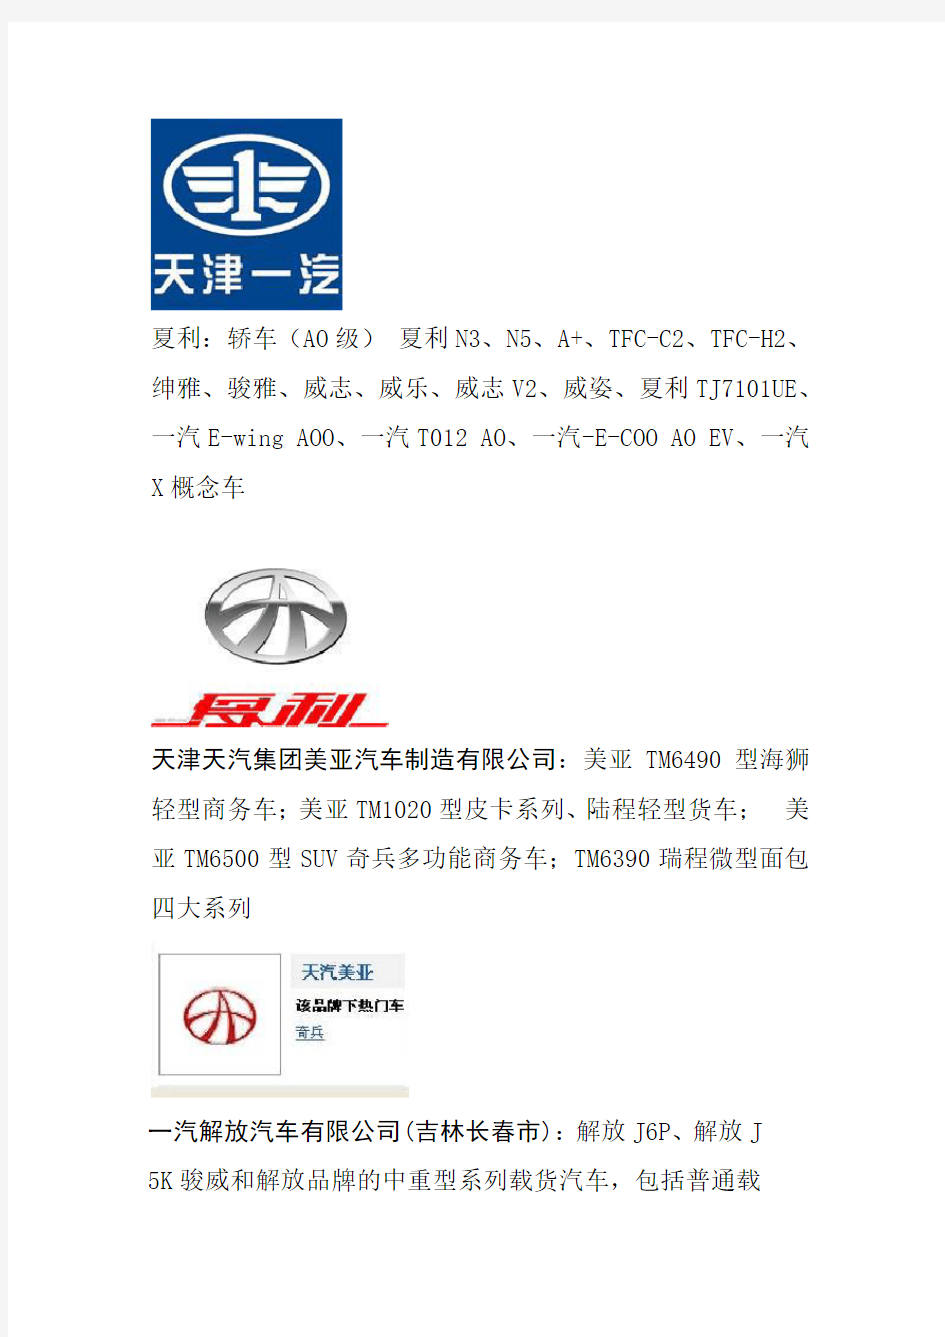 中国现有国产自主汽车品牌